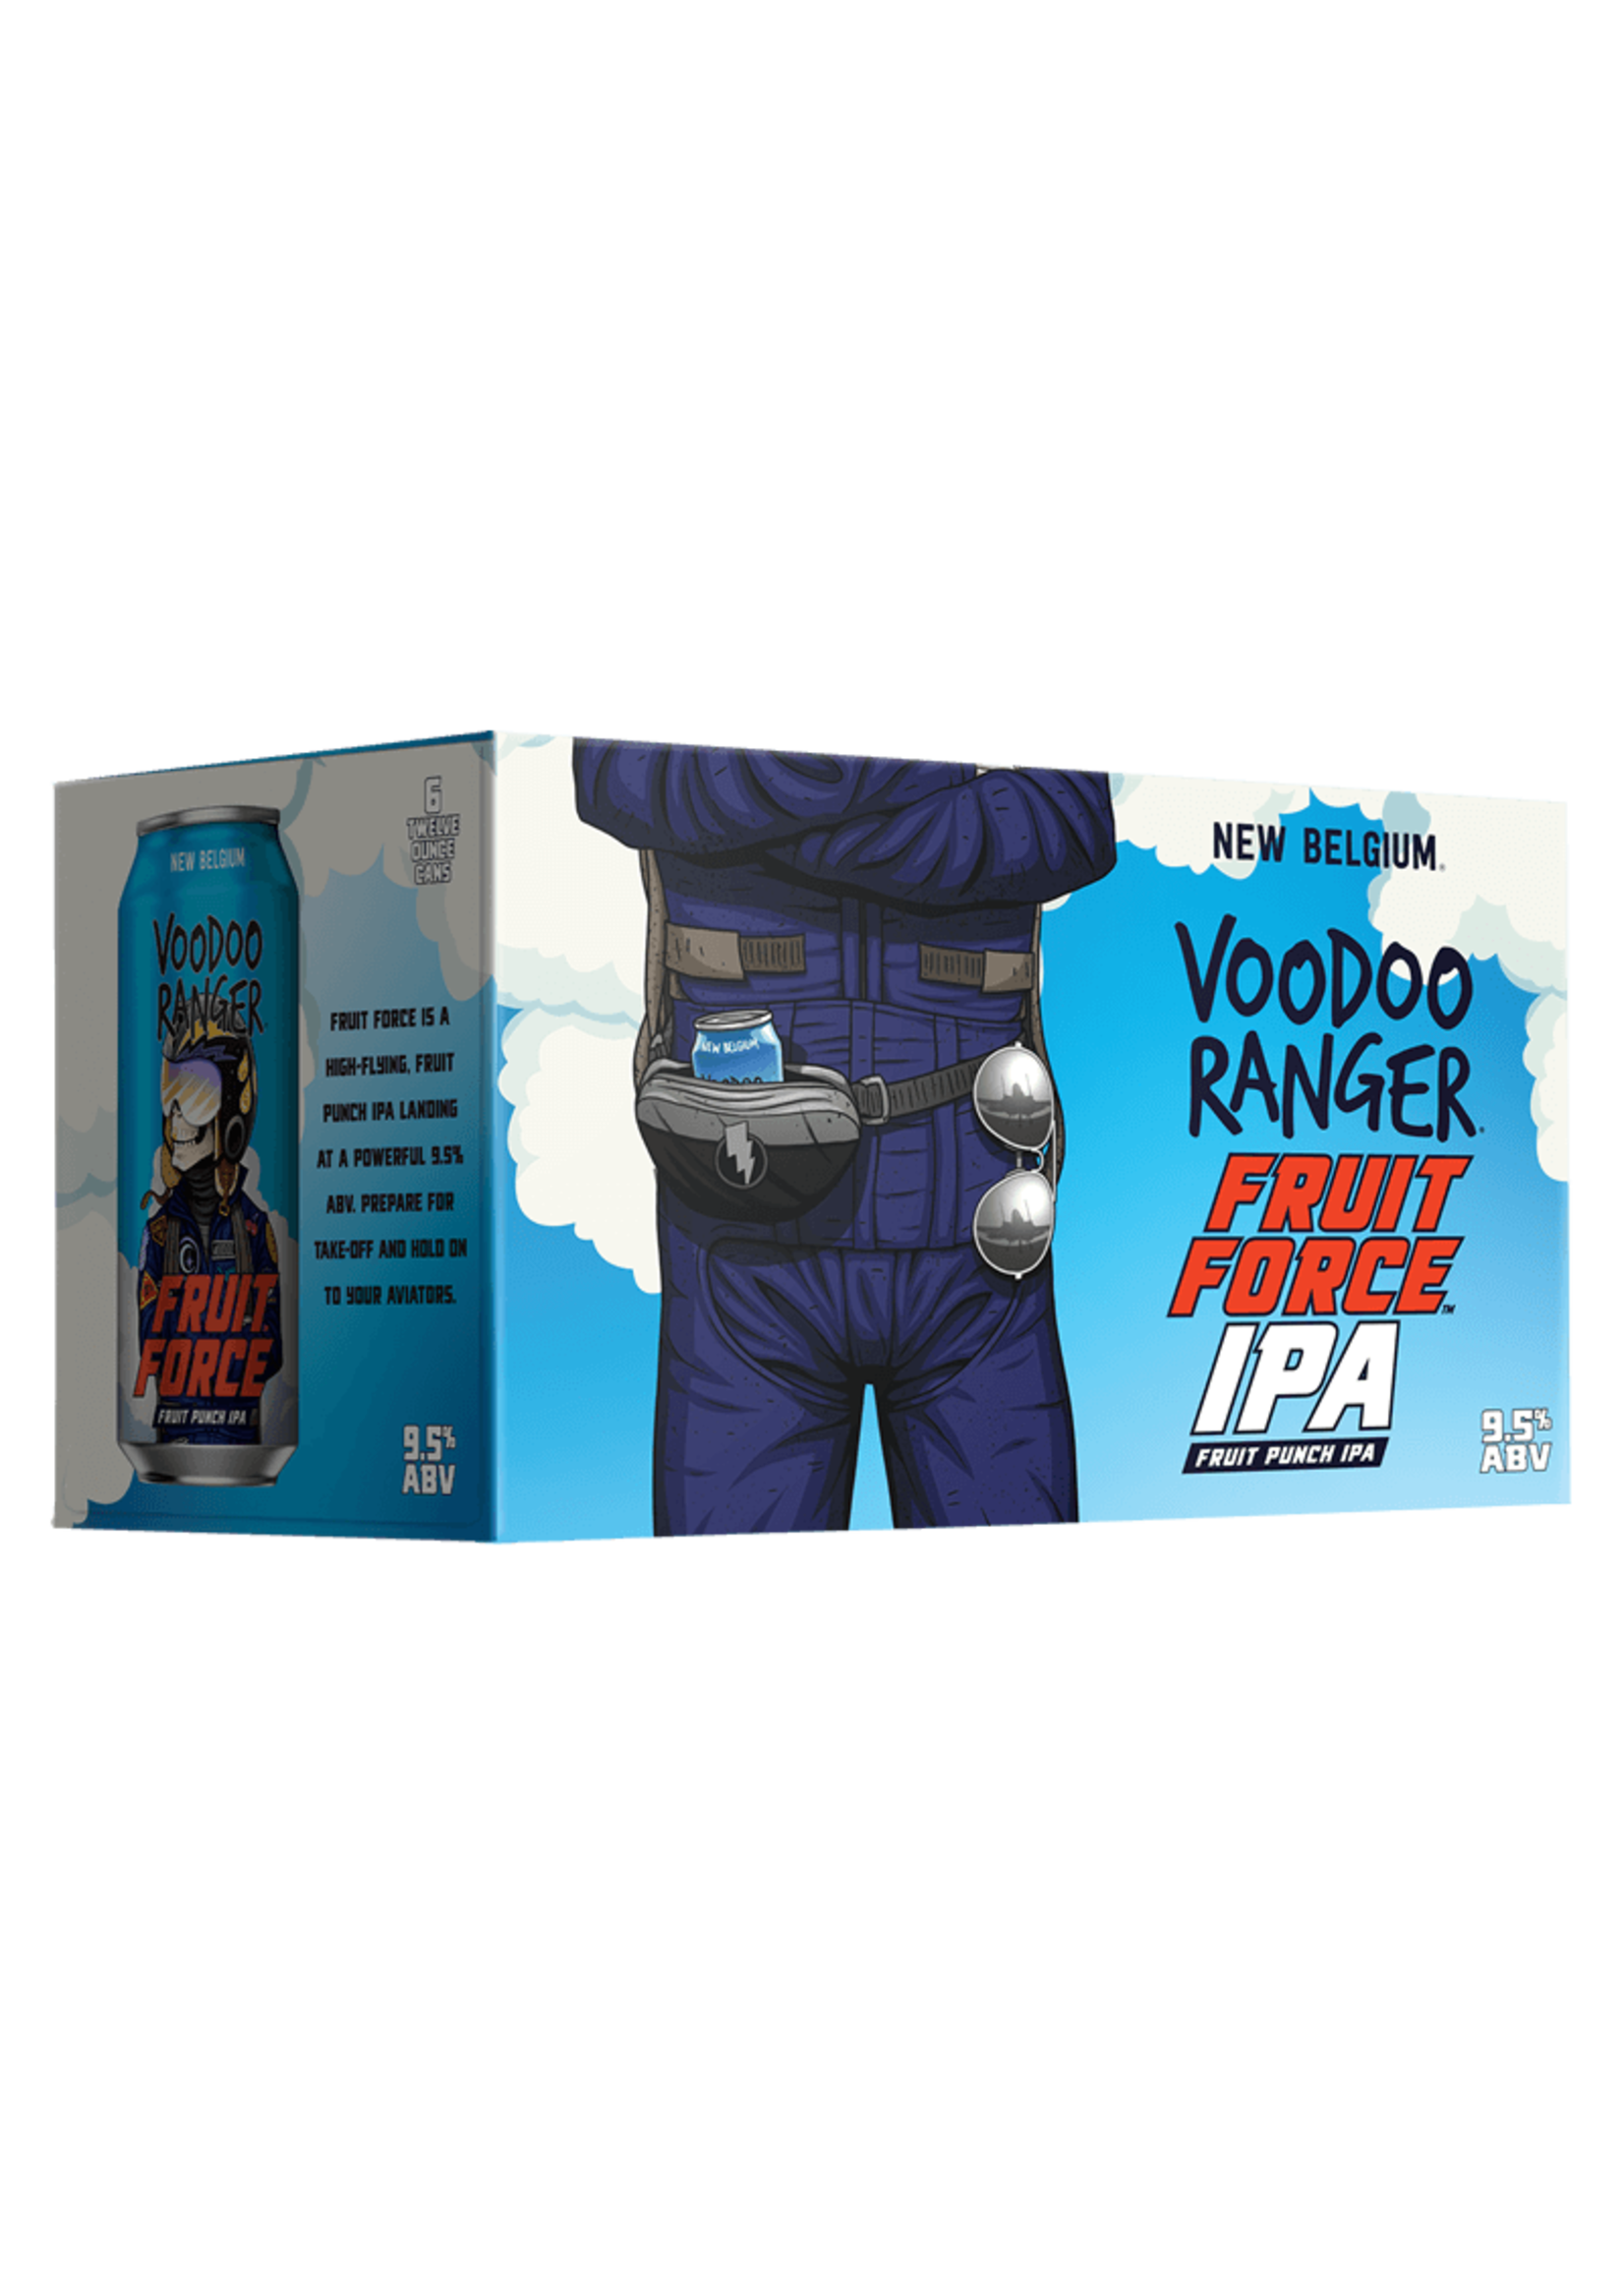 New Belgium Voodoo Ranger Fruit Force IPA 6pk 12oz Cans